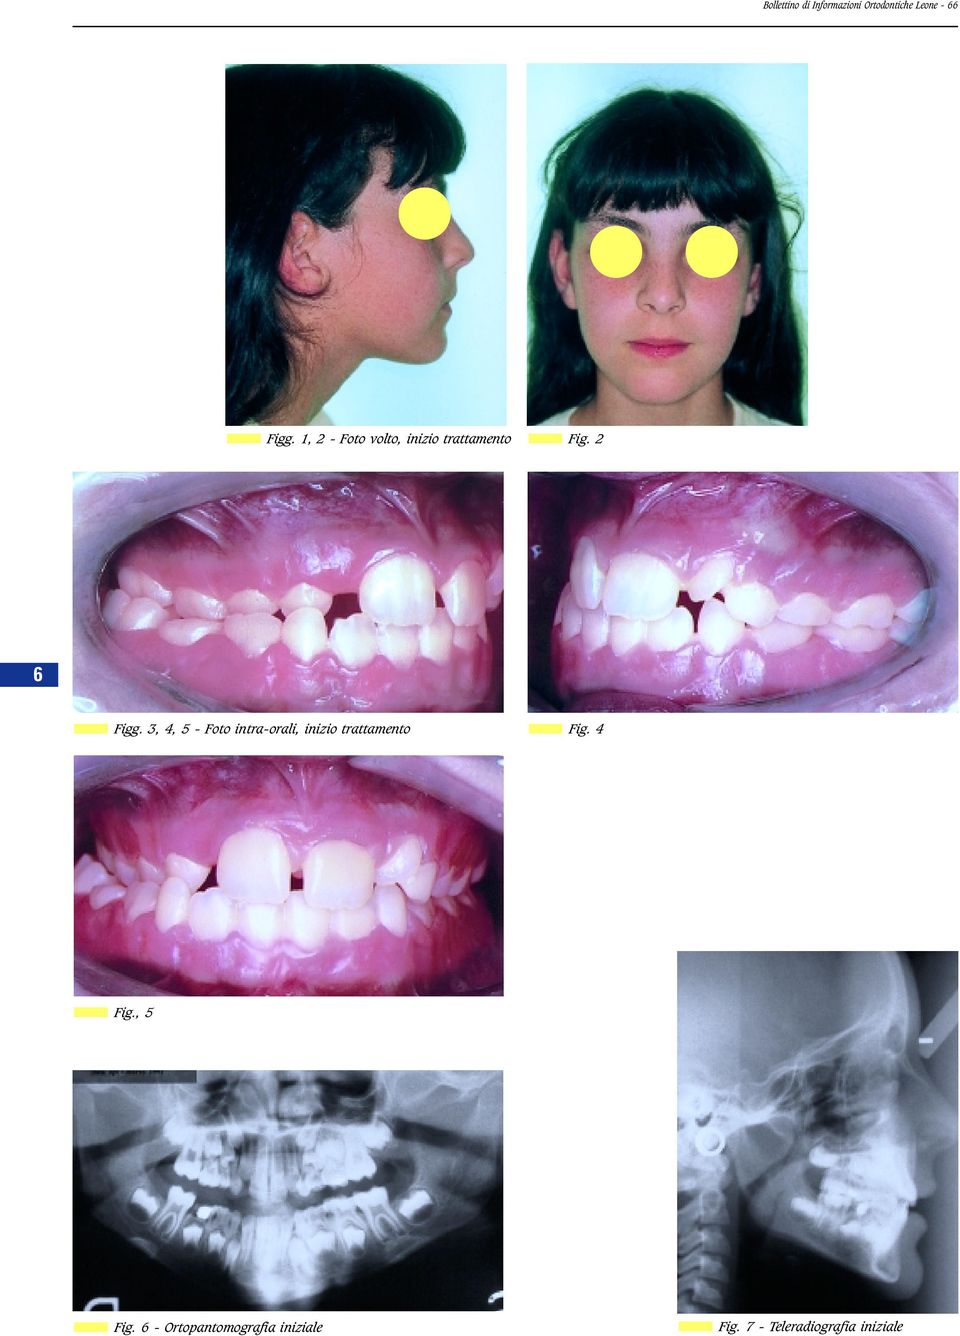 3, 4, 5 - Foto intra-orali, inizio trattamento